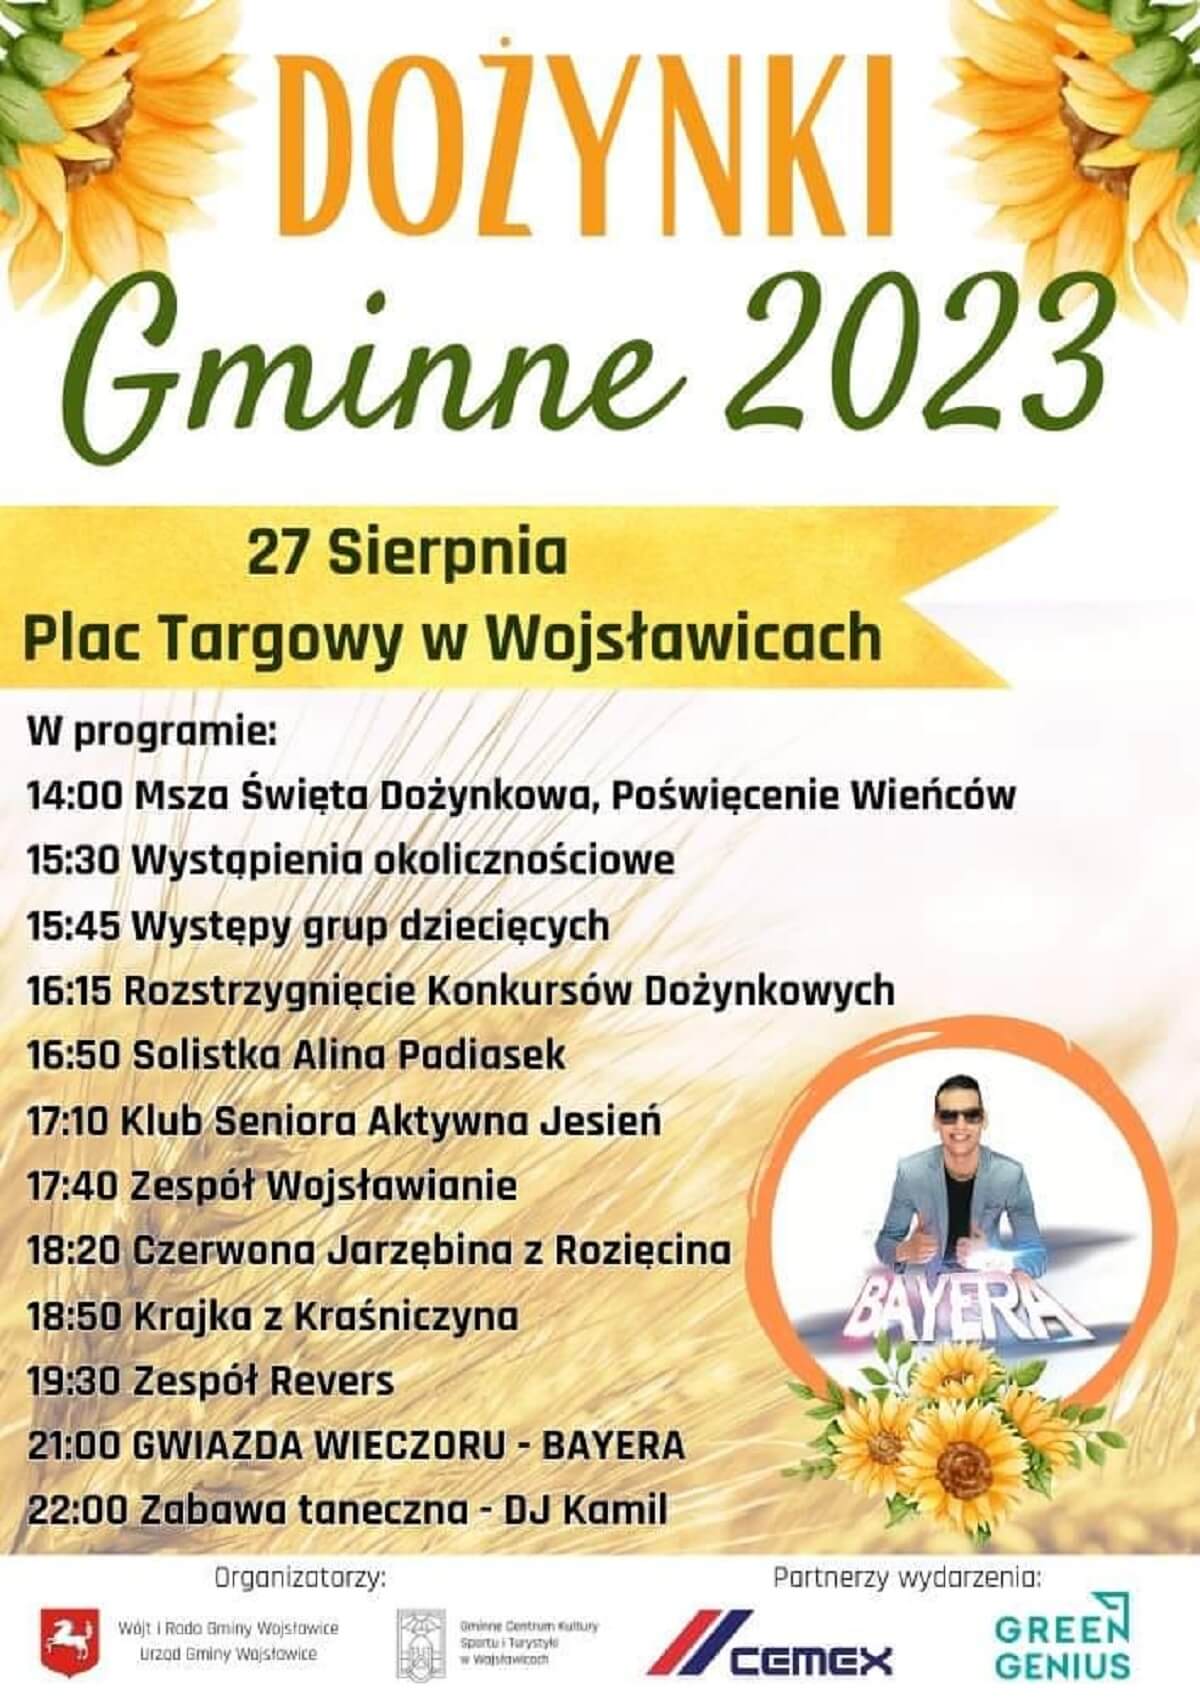 Dożynki w Wojsławicach 2023 - plakat, program wydarzenia